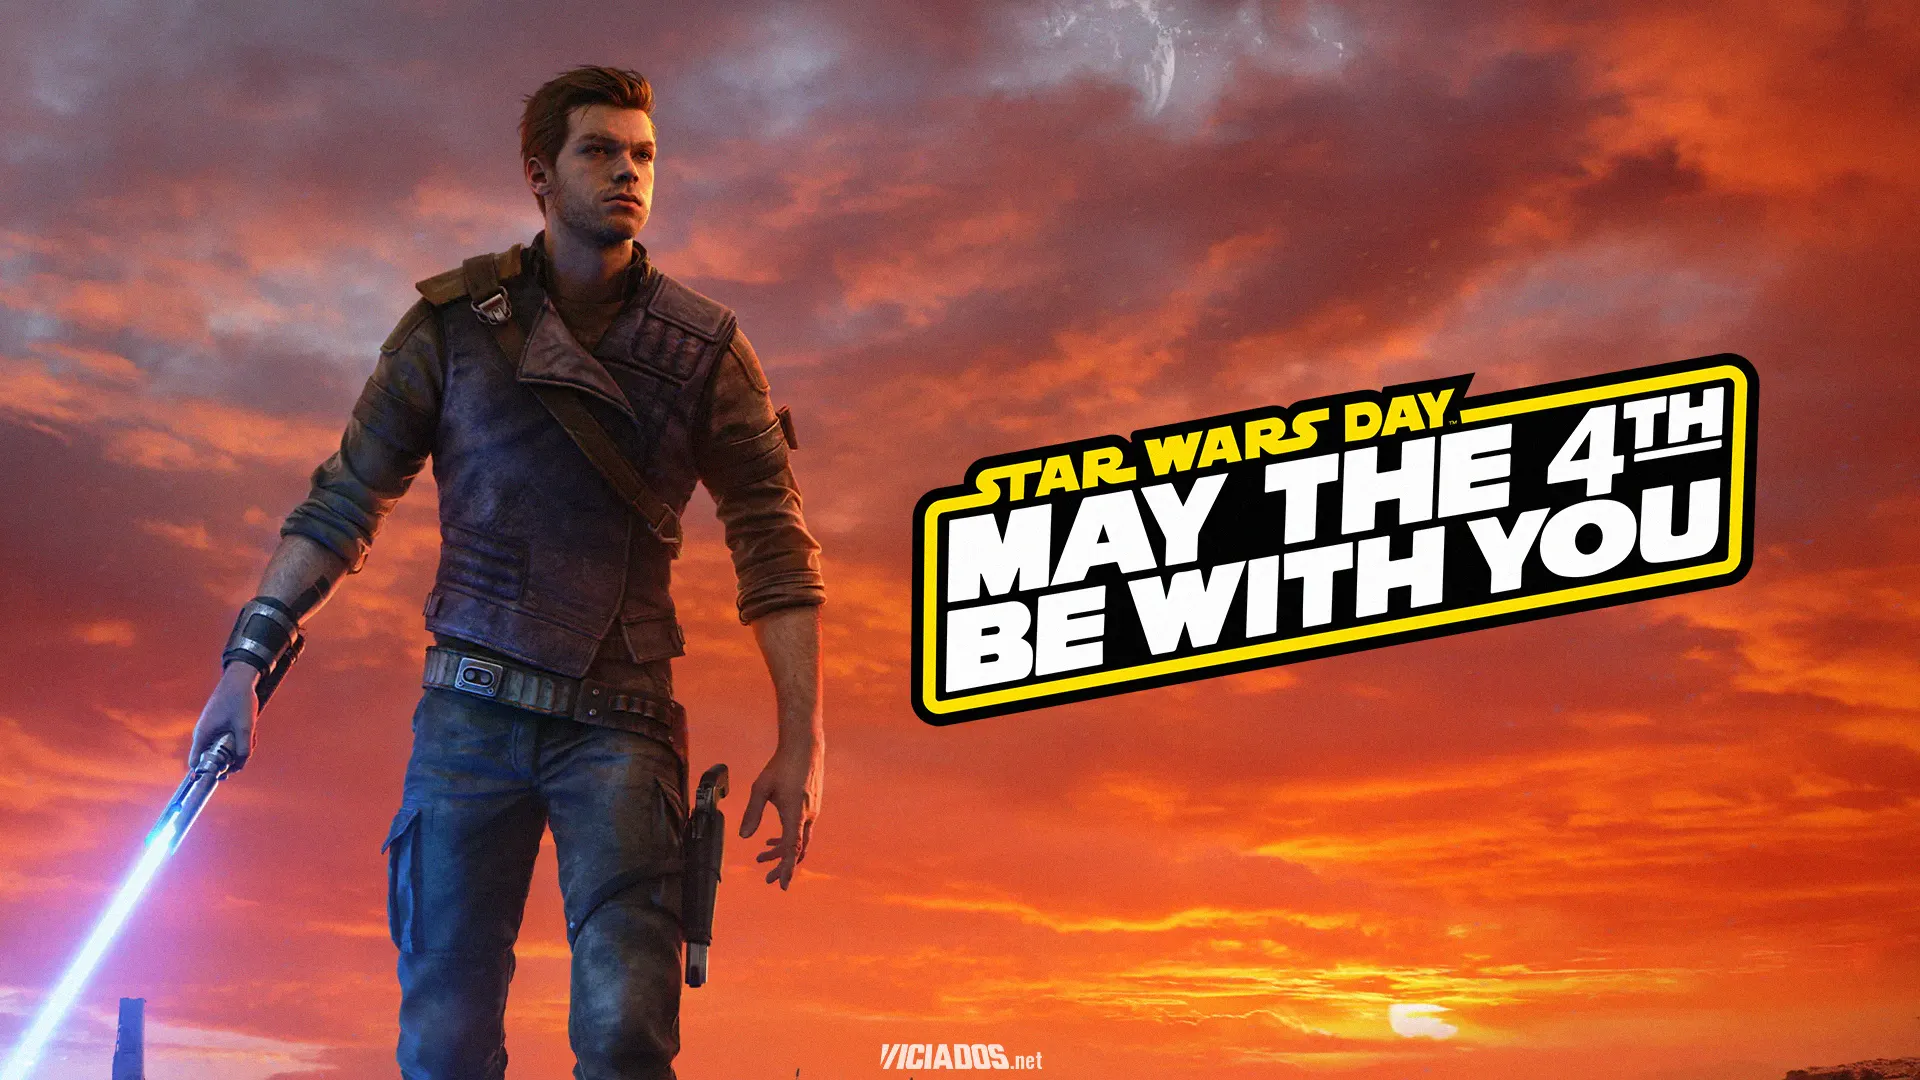 Que a força esteja com você! Celebre o dia do Star Wars com descontos em jogos da franquia na Steam 2023 Viciados